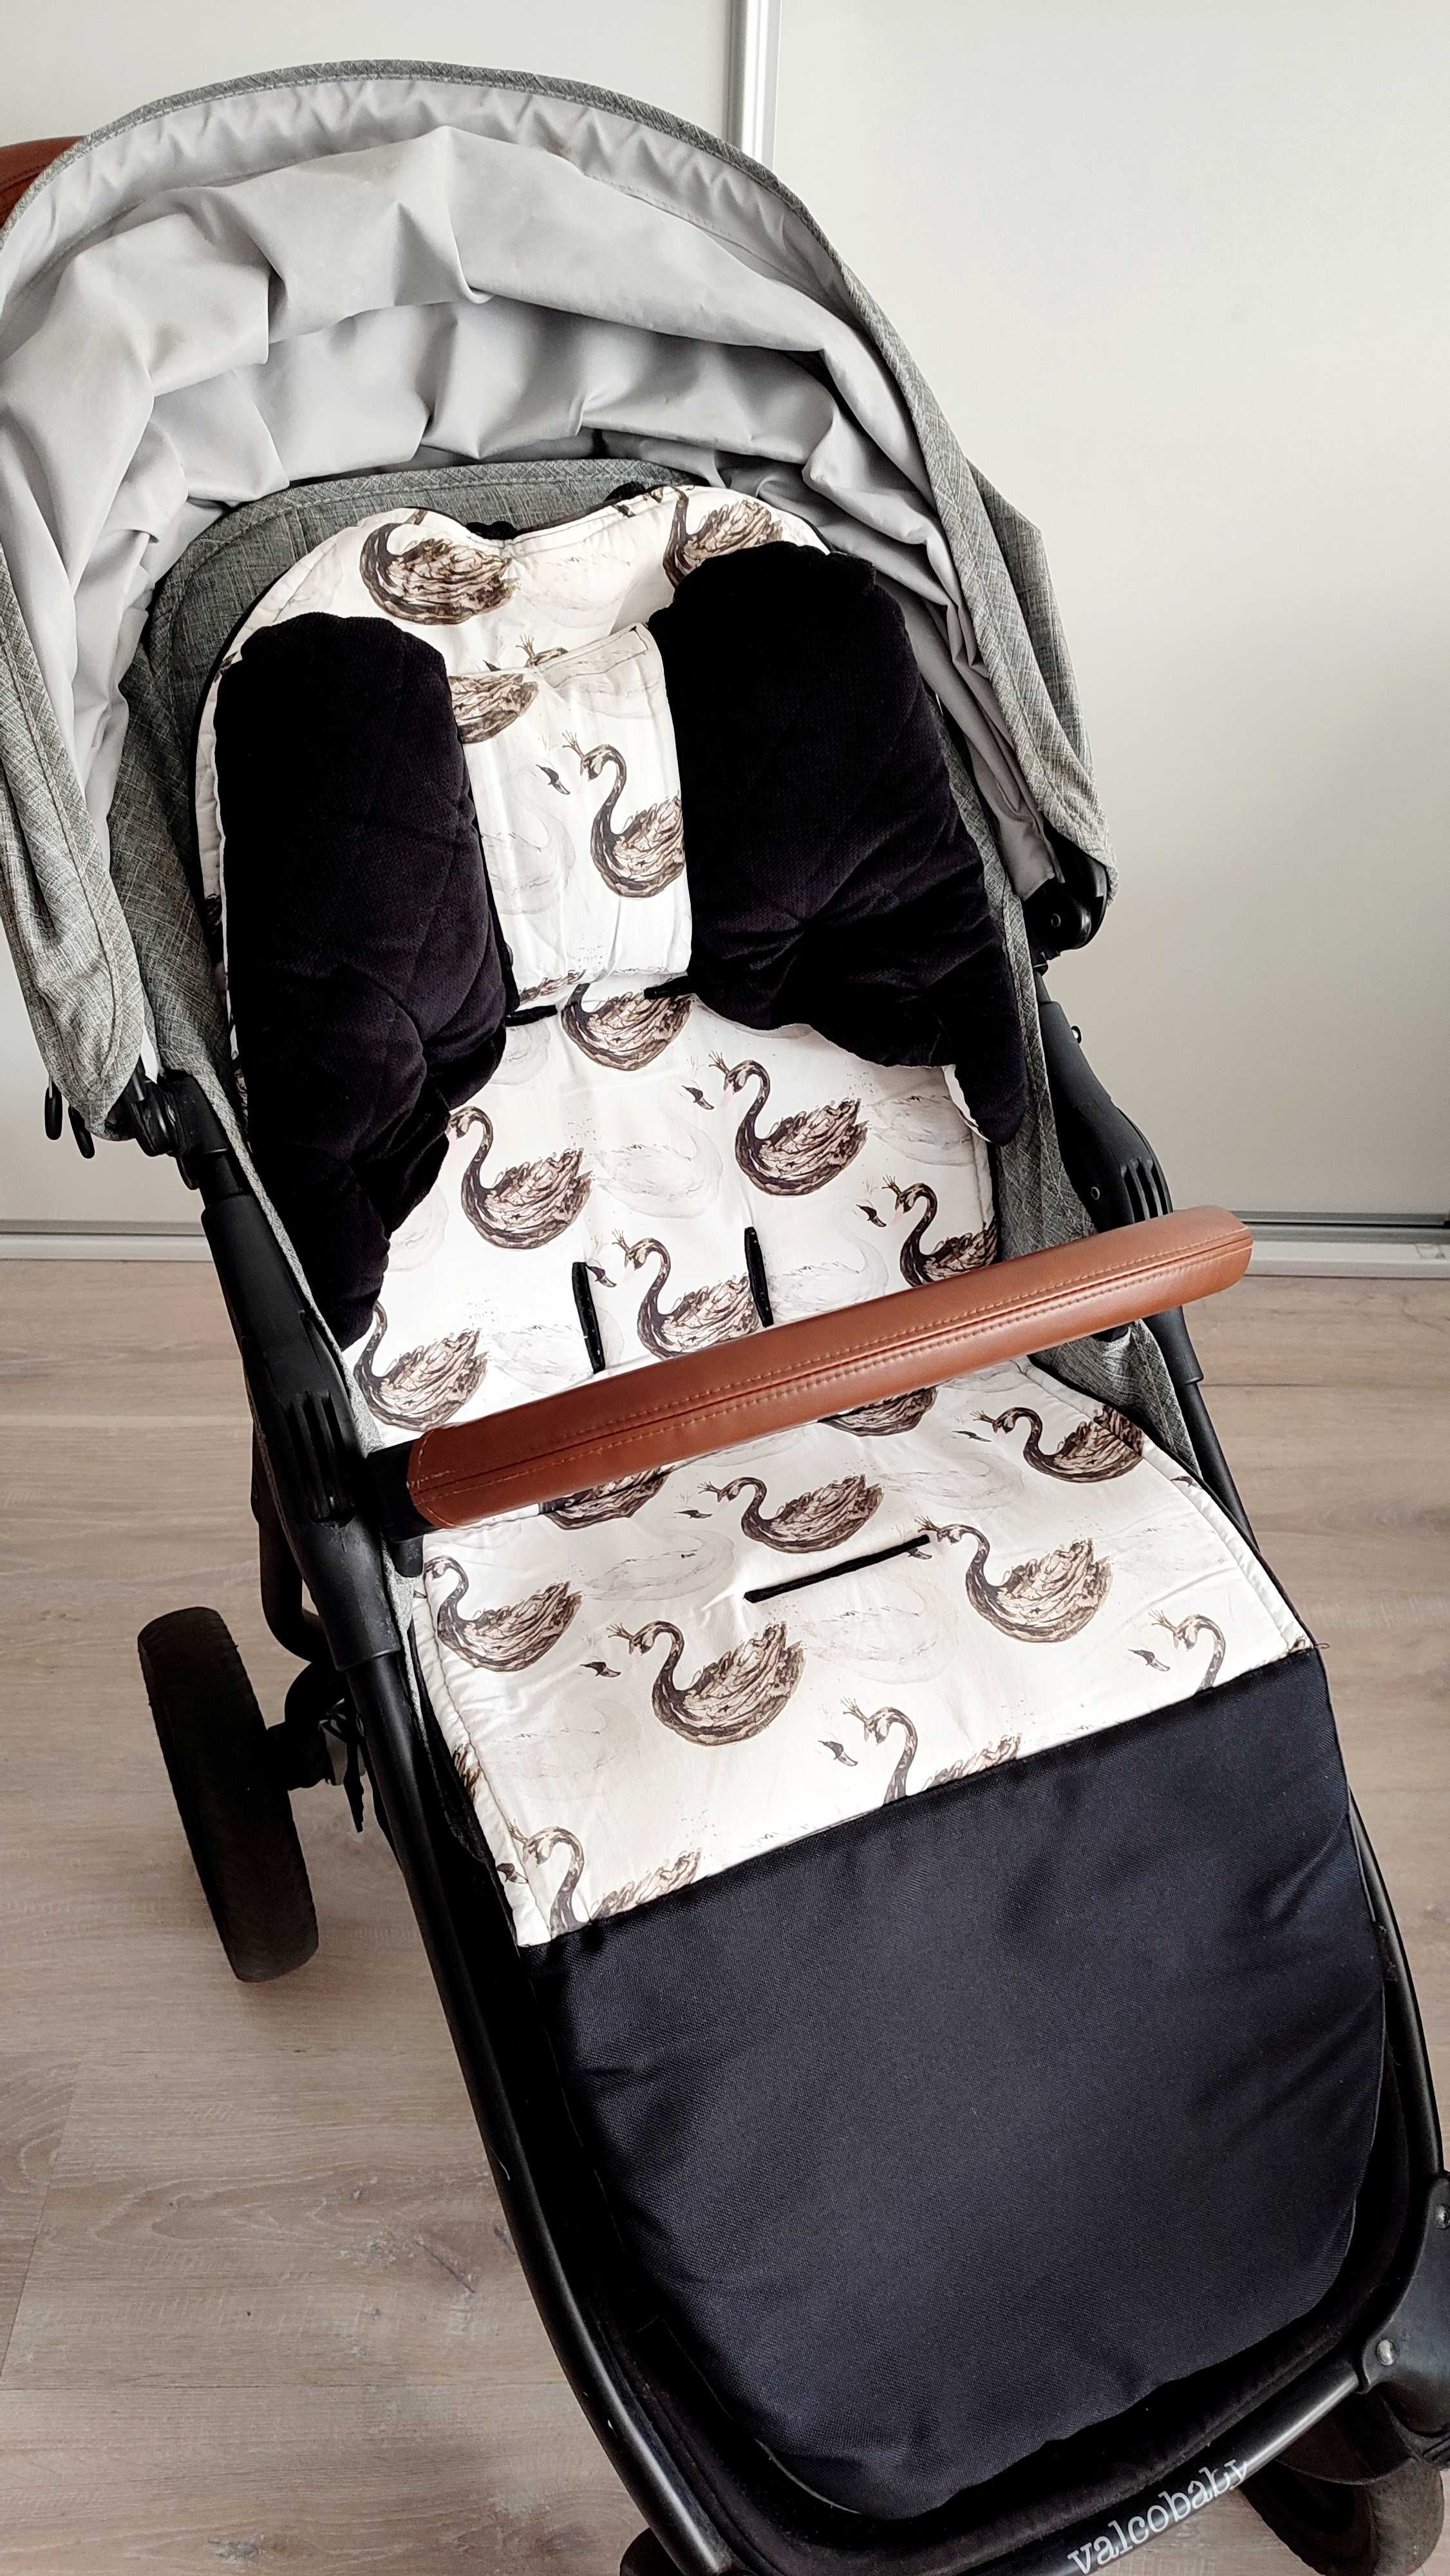 Wózek dziecięcy Valco baby Snape 4 Trend